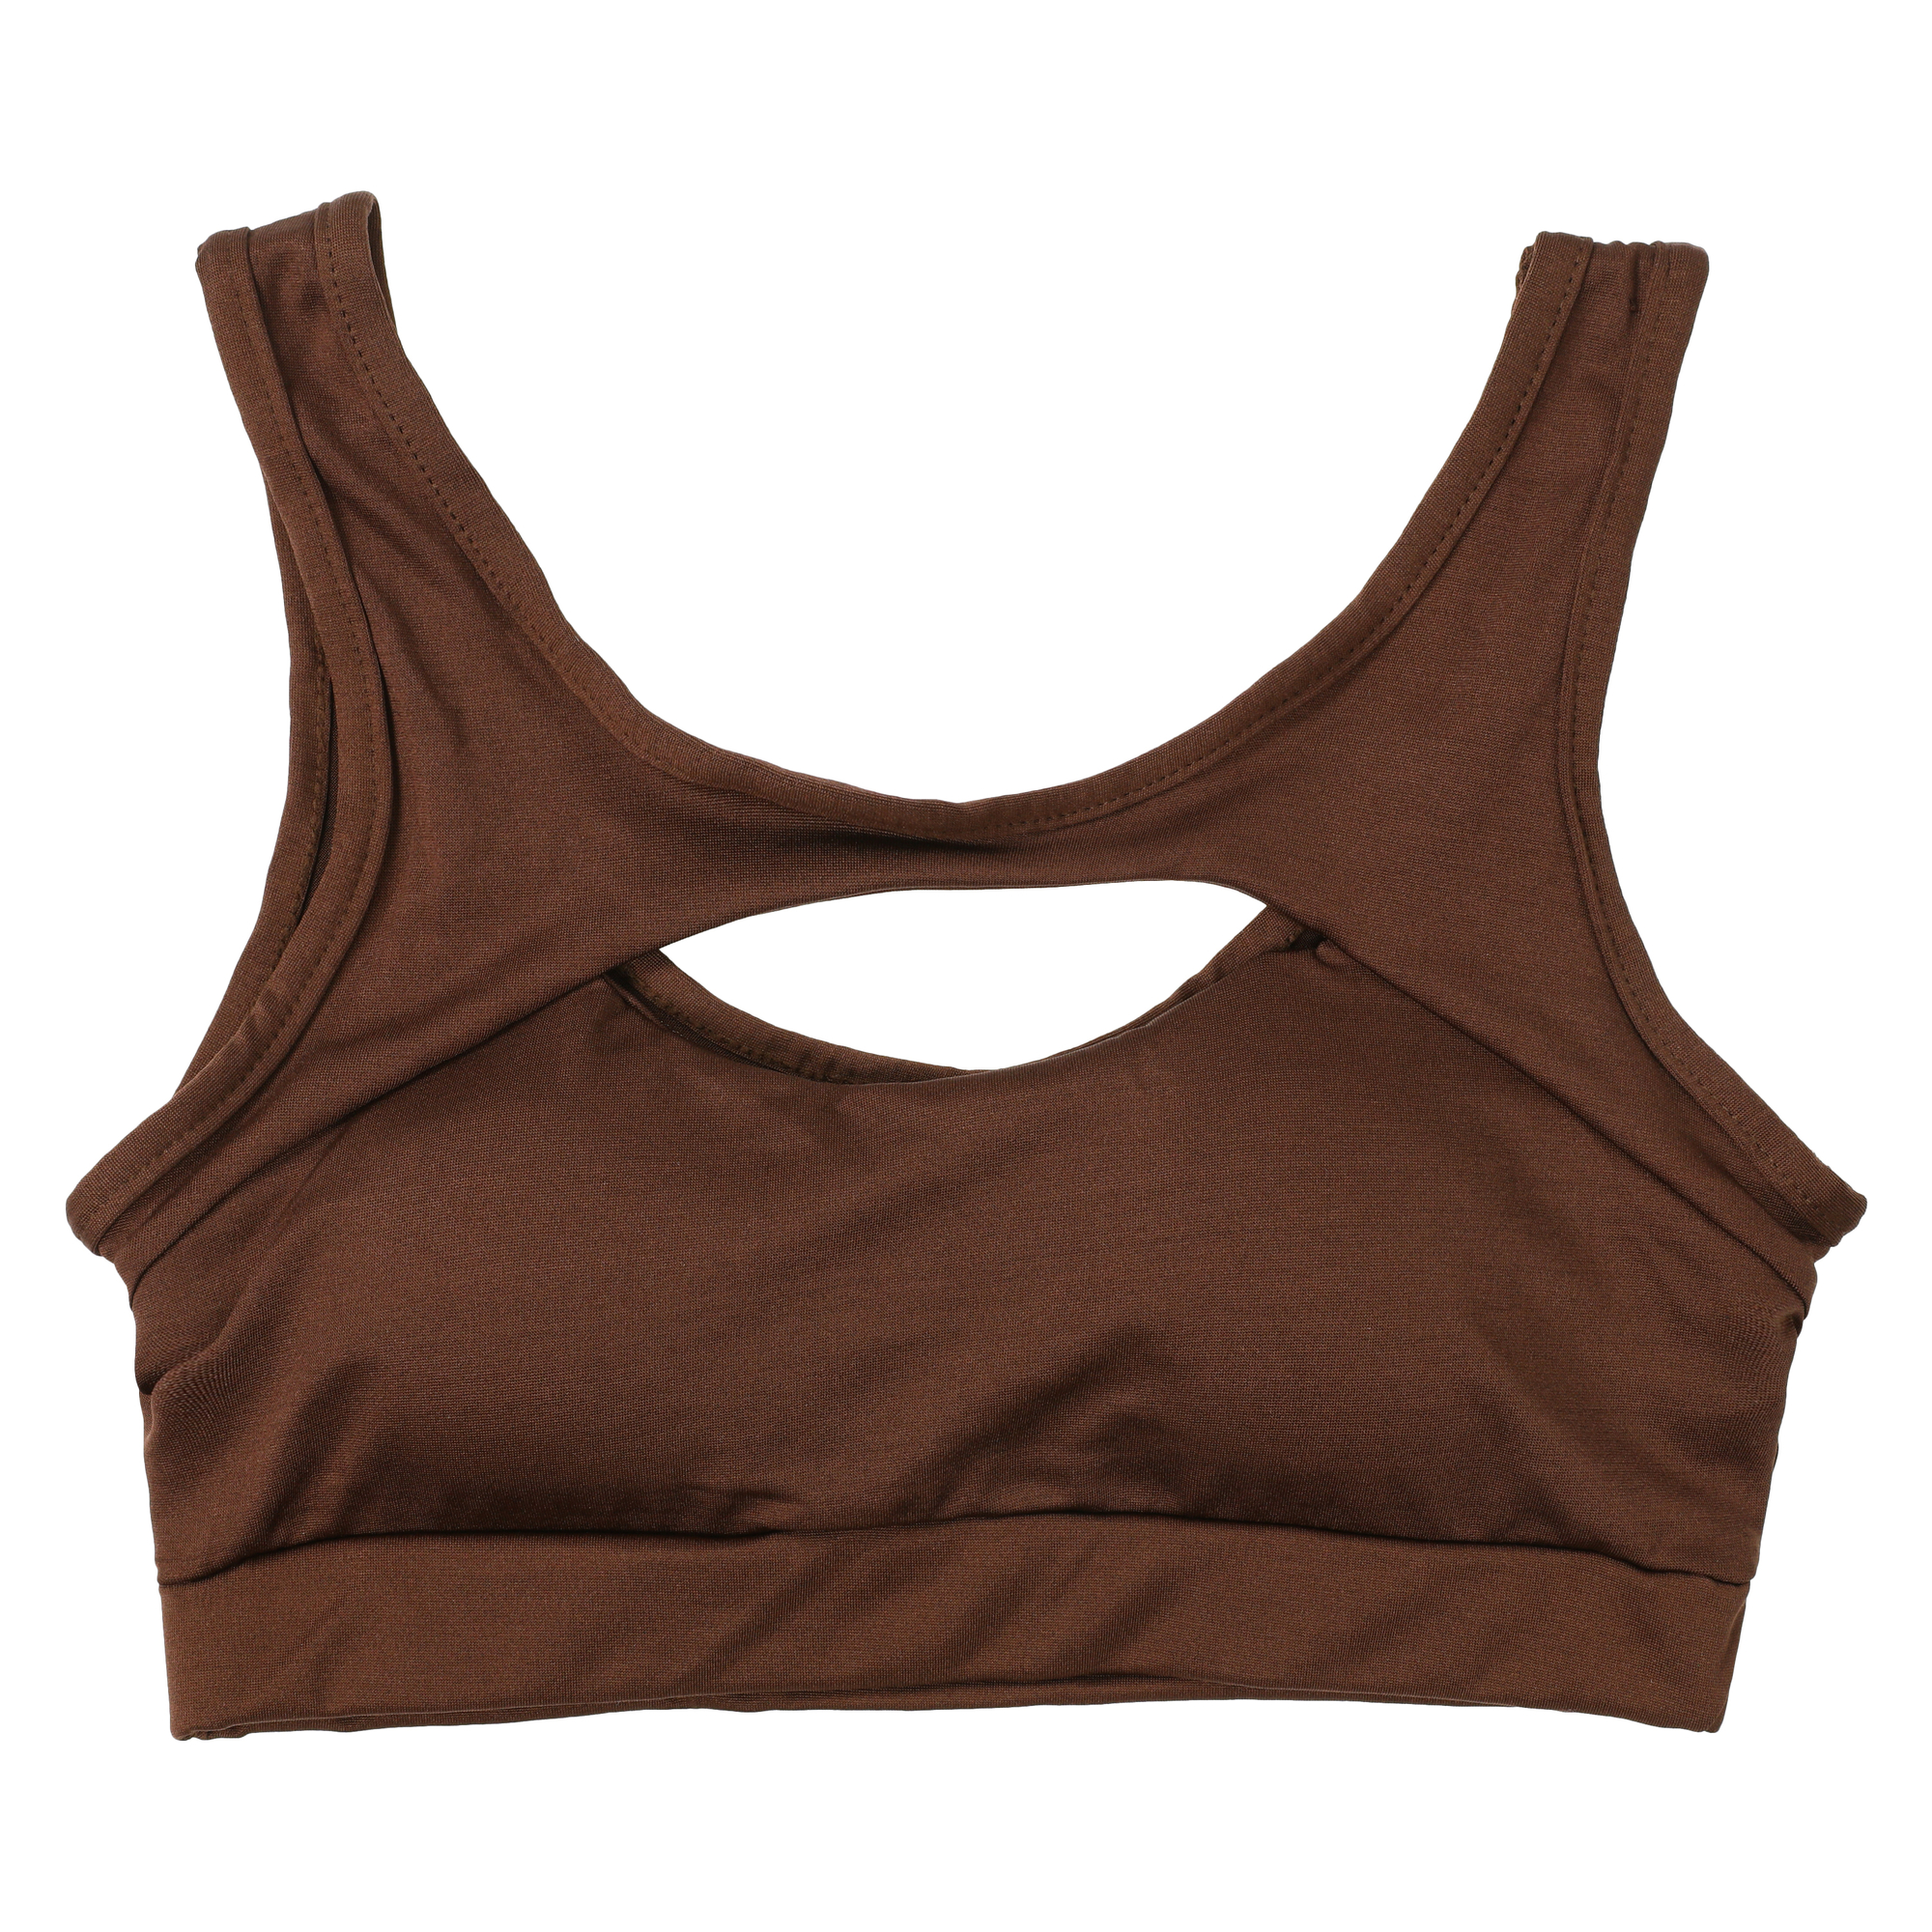 series-8 fitness™ gray sports bra, Five Below